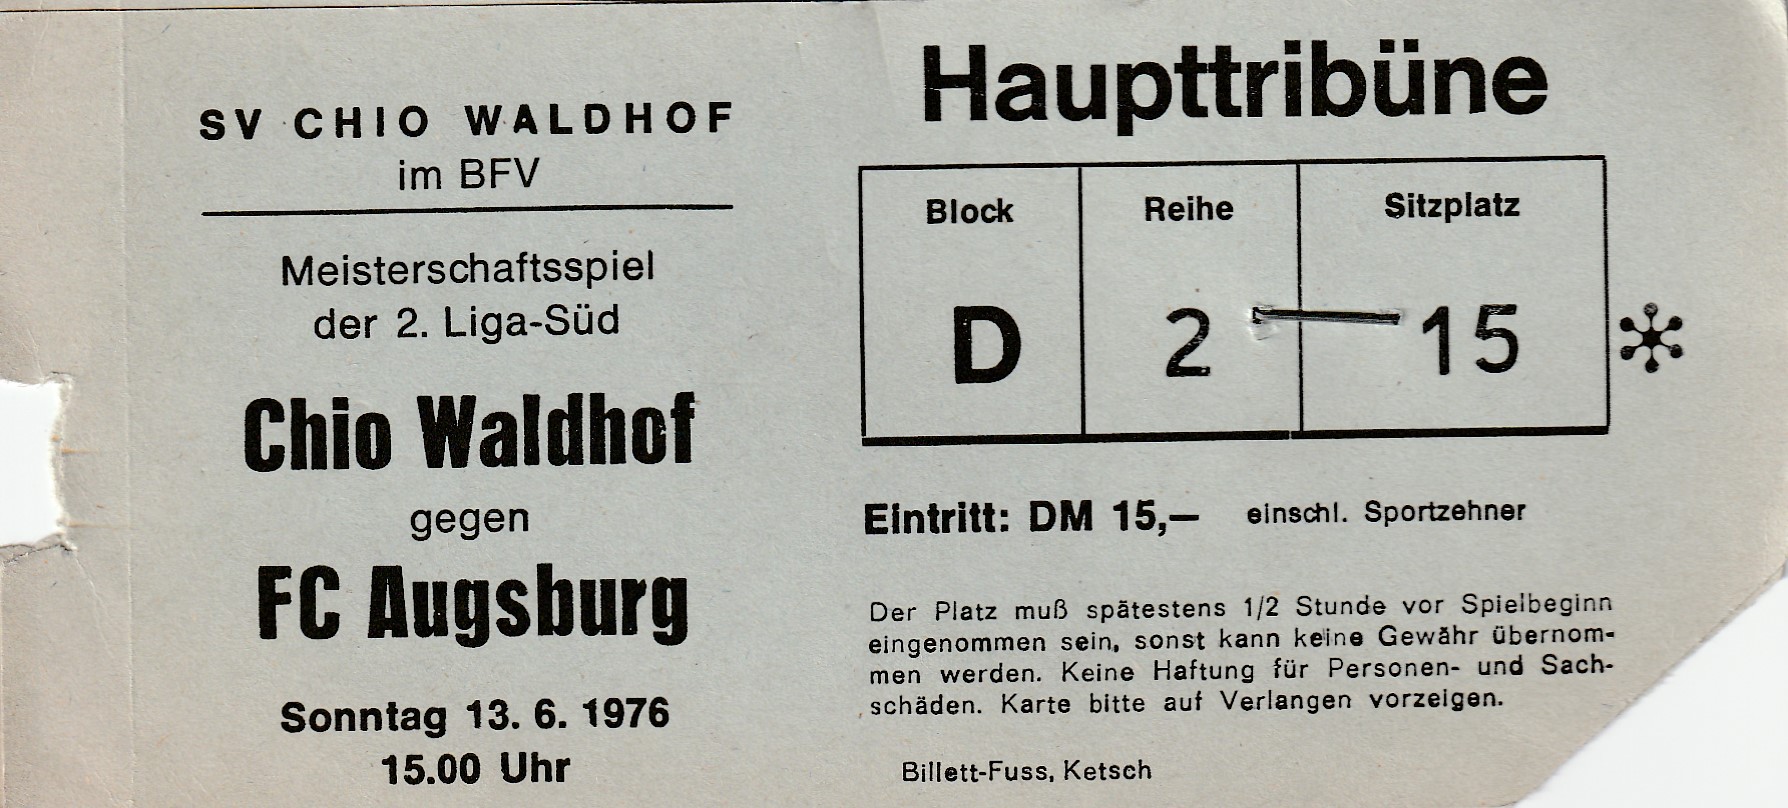 Eintrittskarte 1975 76 Chio Waldhof FC Augsburg.jpg